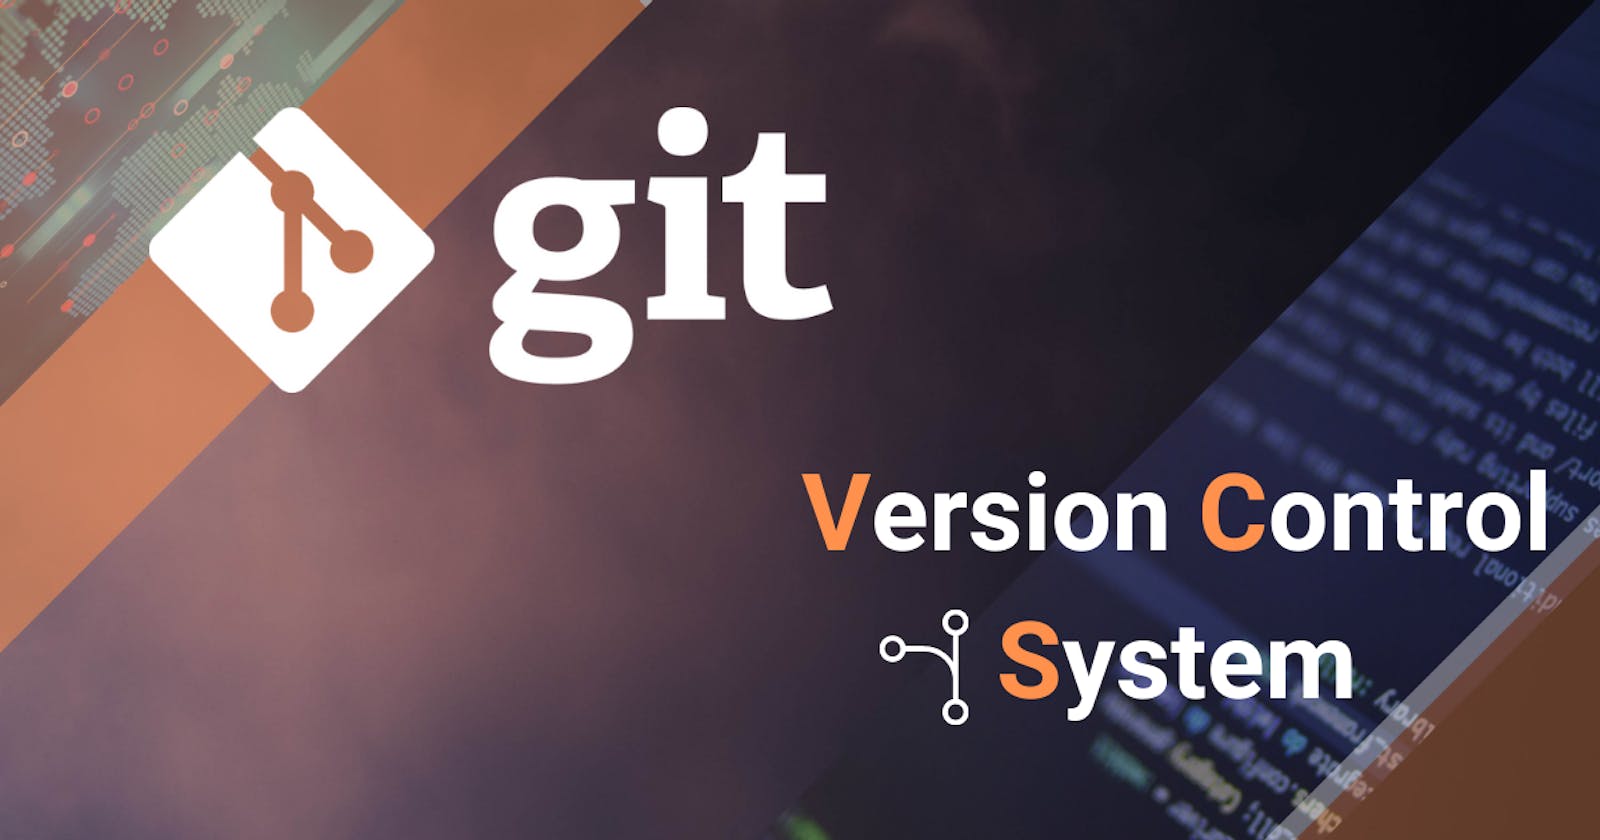 Git basics: What is Git? 🤔